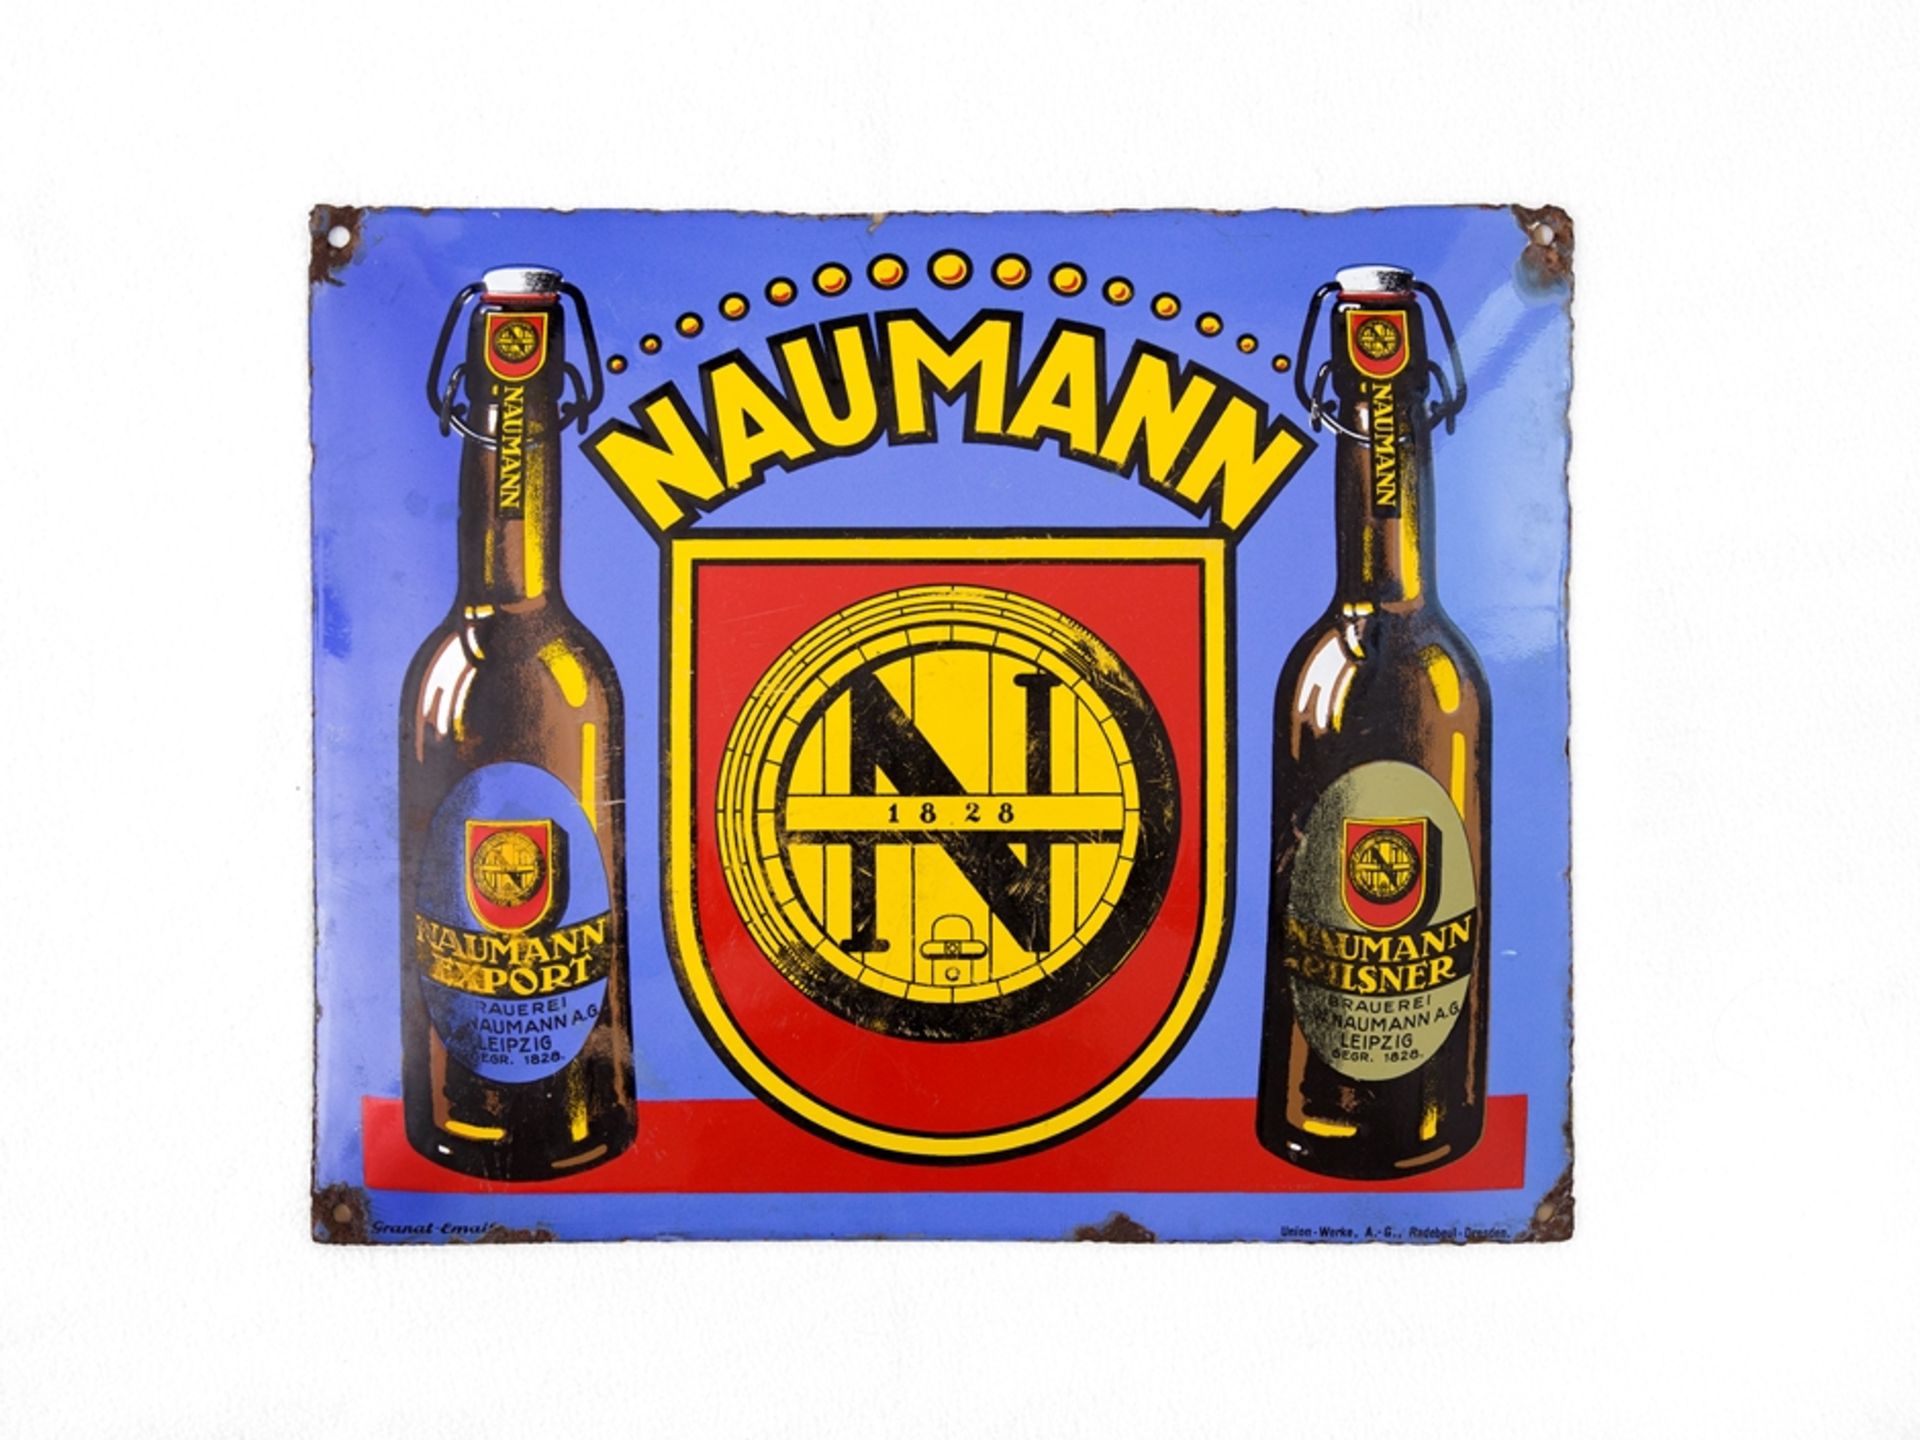 Emailschild Brauerei Naumann, Leipzig, um 1930 - Bild 7 aus 7